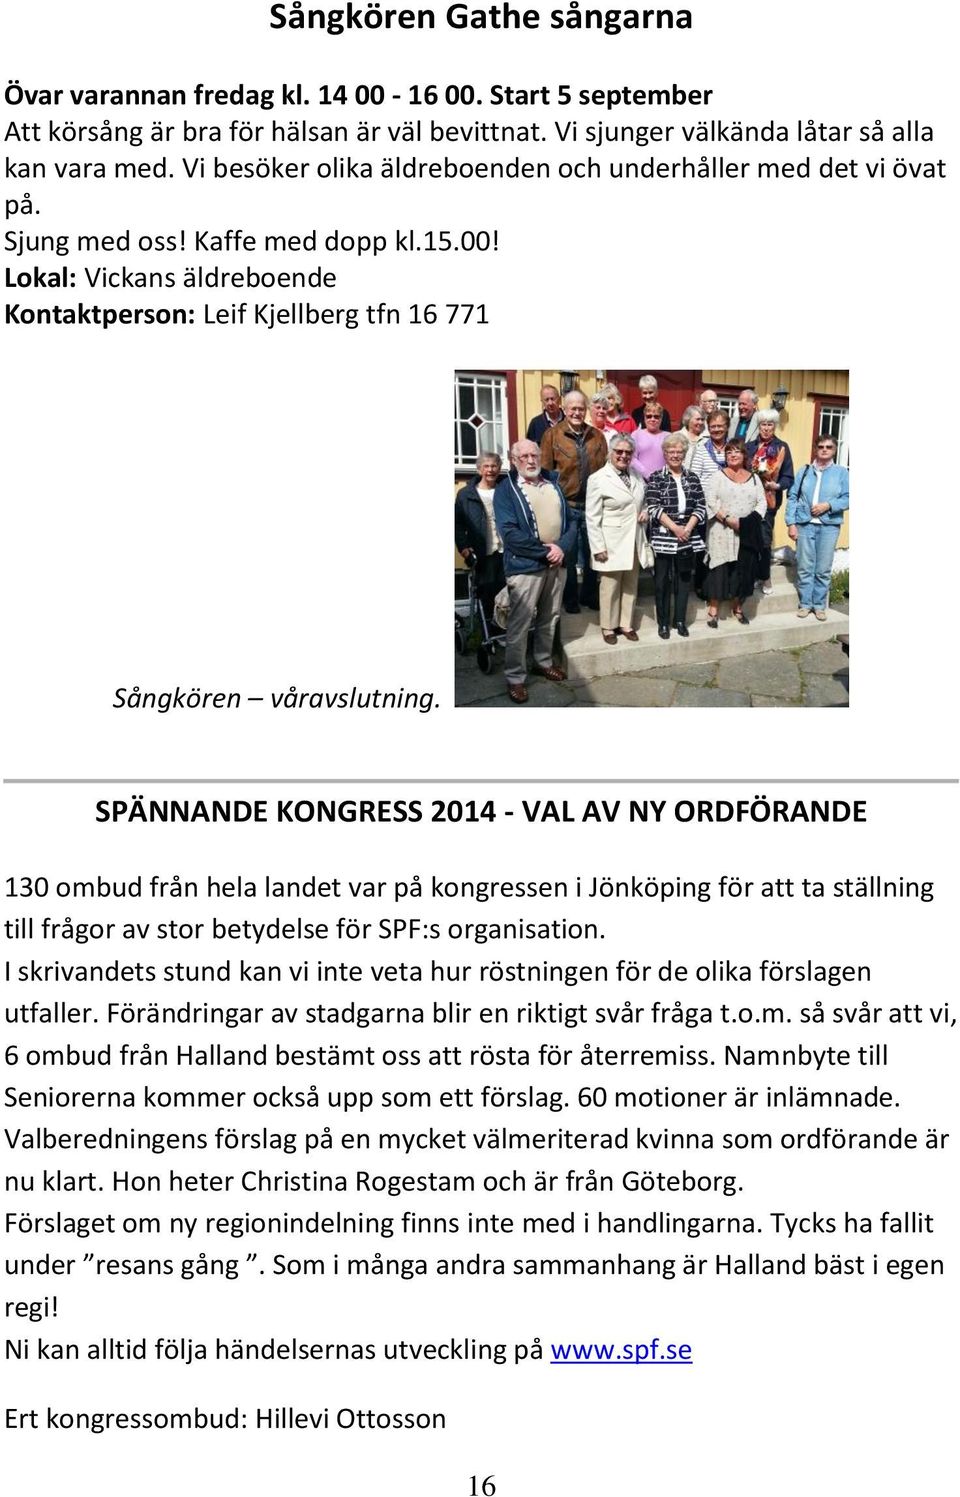 SPÄNNANDE KONGRESS 2014 - VAL AV NY ORDFÖRANDE 130 ombud från hela landet var på kongressen i Jönköping för att ta ställning till frågor av stor betydelse för SPF:s organisation.